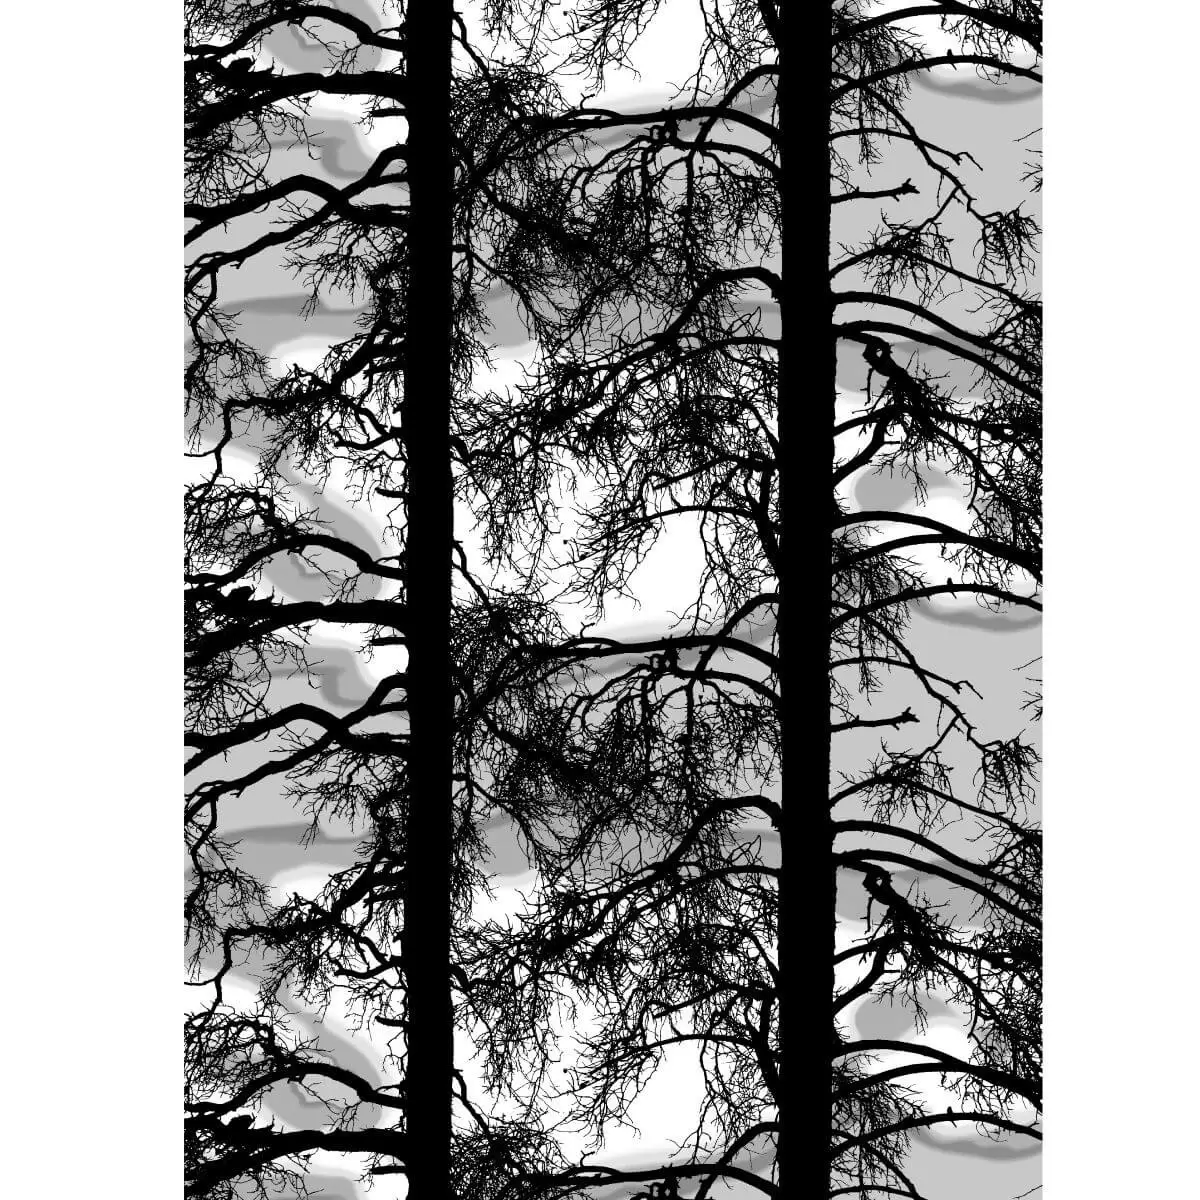 Nowoczesny wzór zasłony ozdobnej KELOHONKA do salonu. Czarne pnie i gałęzie drzew na tle odcieni kolorów szarego i białego. Skandynawski design